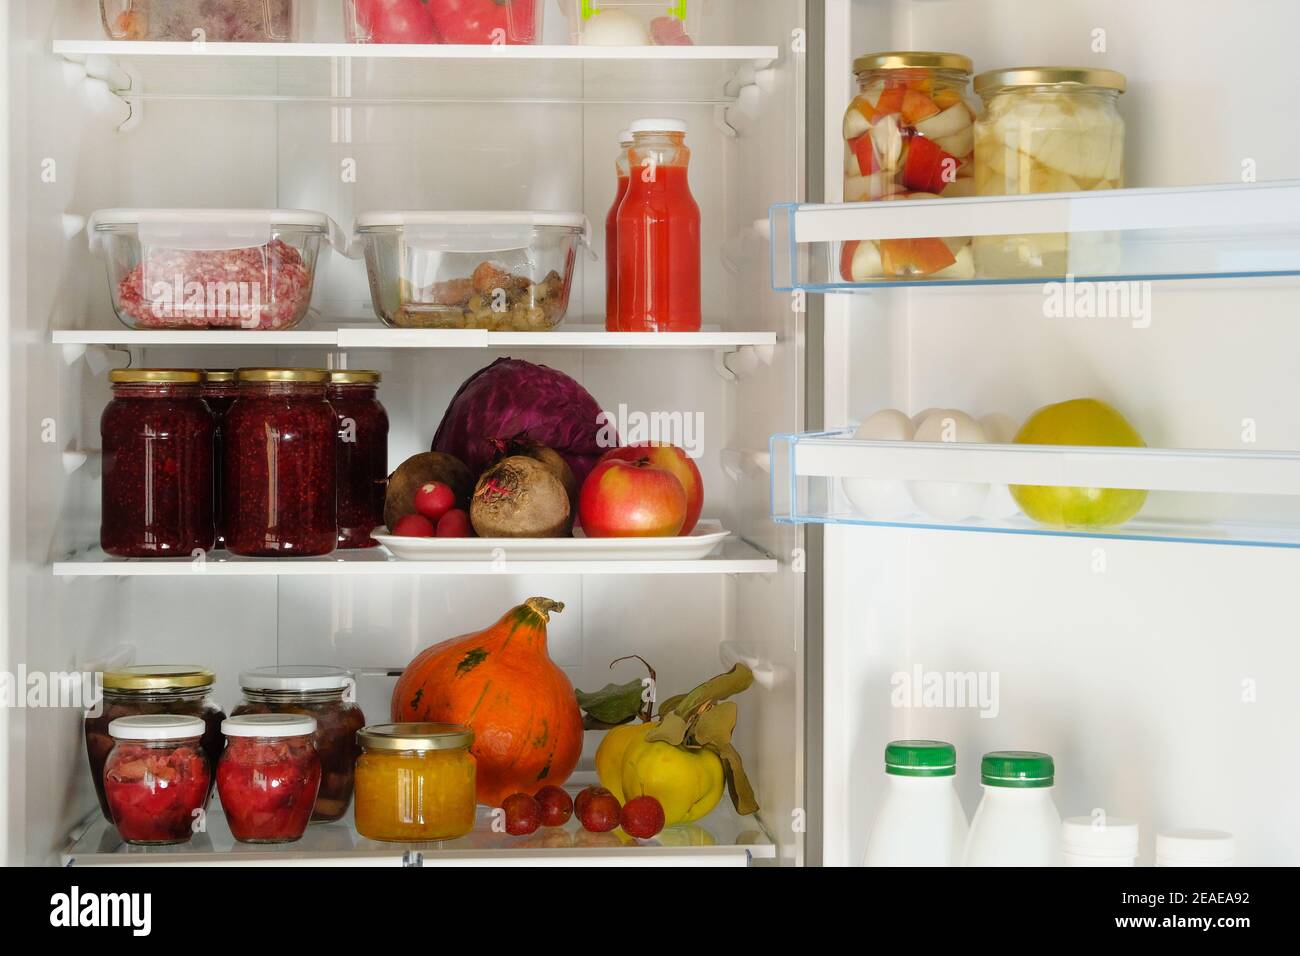 Vasetti con frutta e marmellate di bacche fatte in casa, succhi e altri prodotti sul ripiano in frigorifero. Gli alimenti fermentati sani stanno in frigorifero. Foto Stock